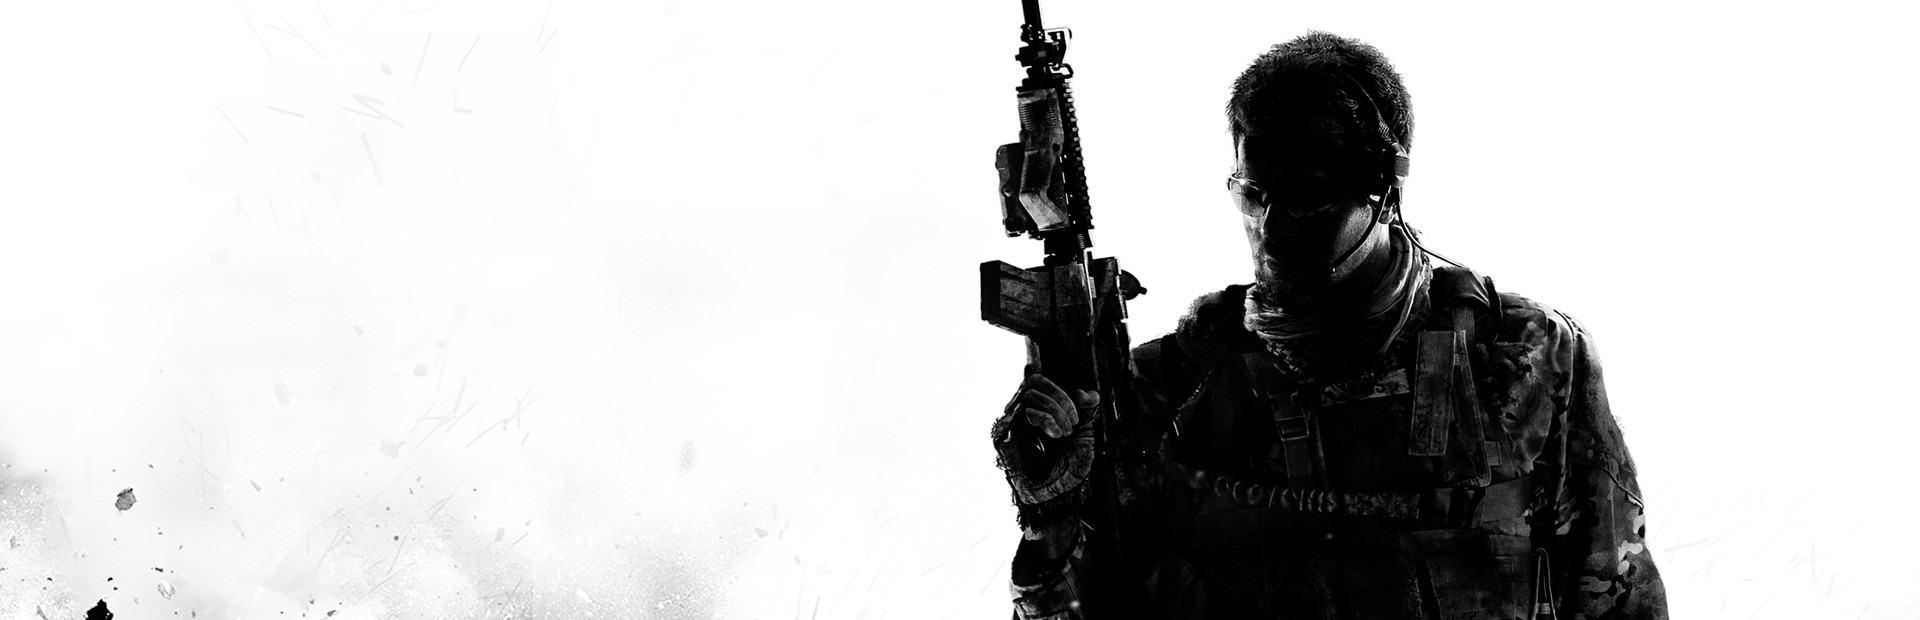 Banner Call of Duty: Modern Warfare 3 Collection 4 - Final Assault